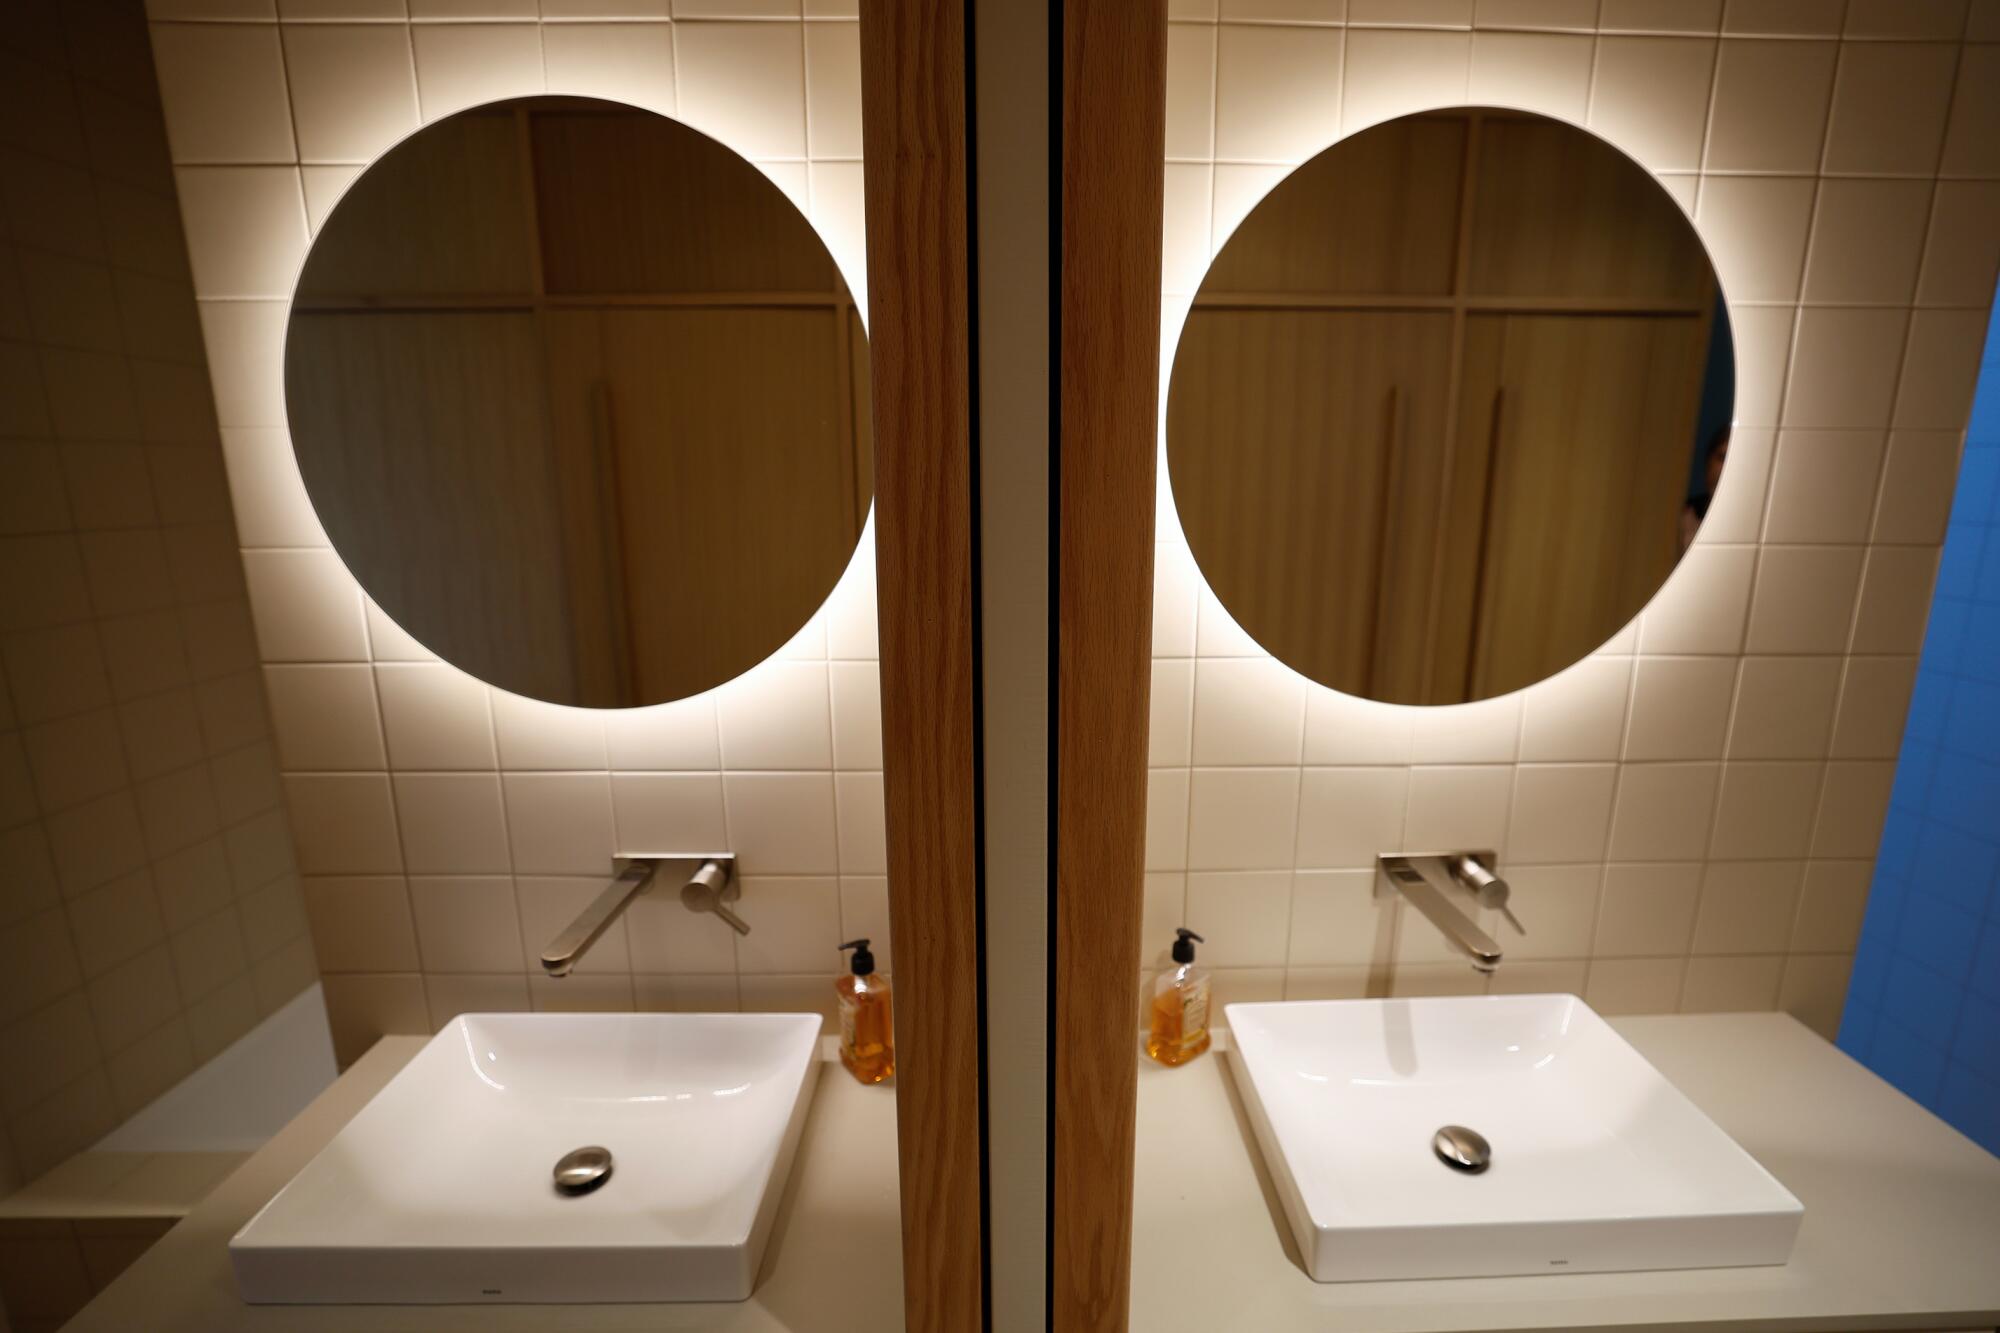 Lyset lyser bak et speil over en vask, reflektert i et speil.